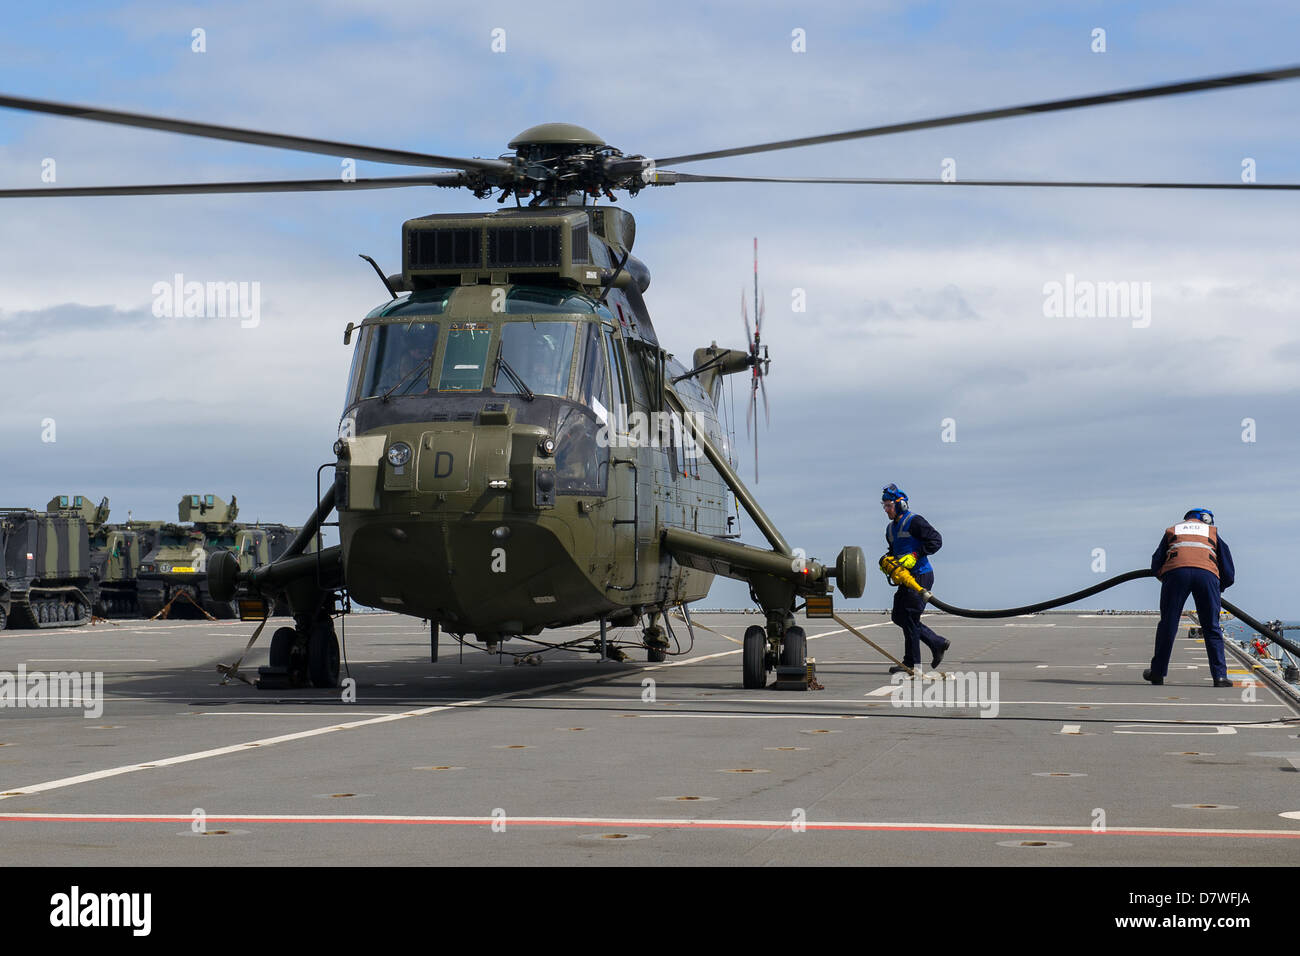 Royal Navy Mk4 hélicoptère Sea King dans le poste de pilotage de navire d'Assaut HMS Rempart prépare à décoller. Banque D'Images